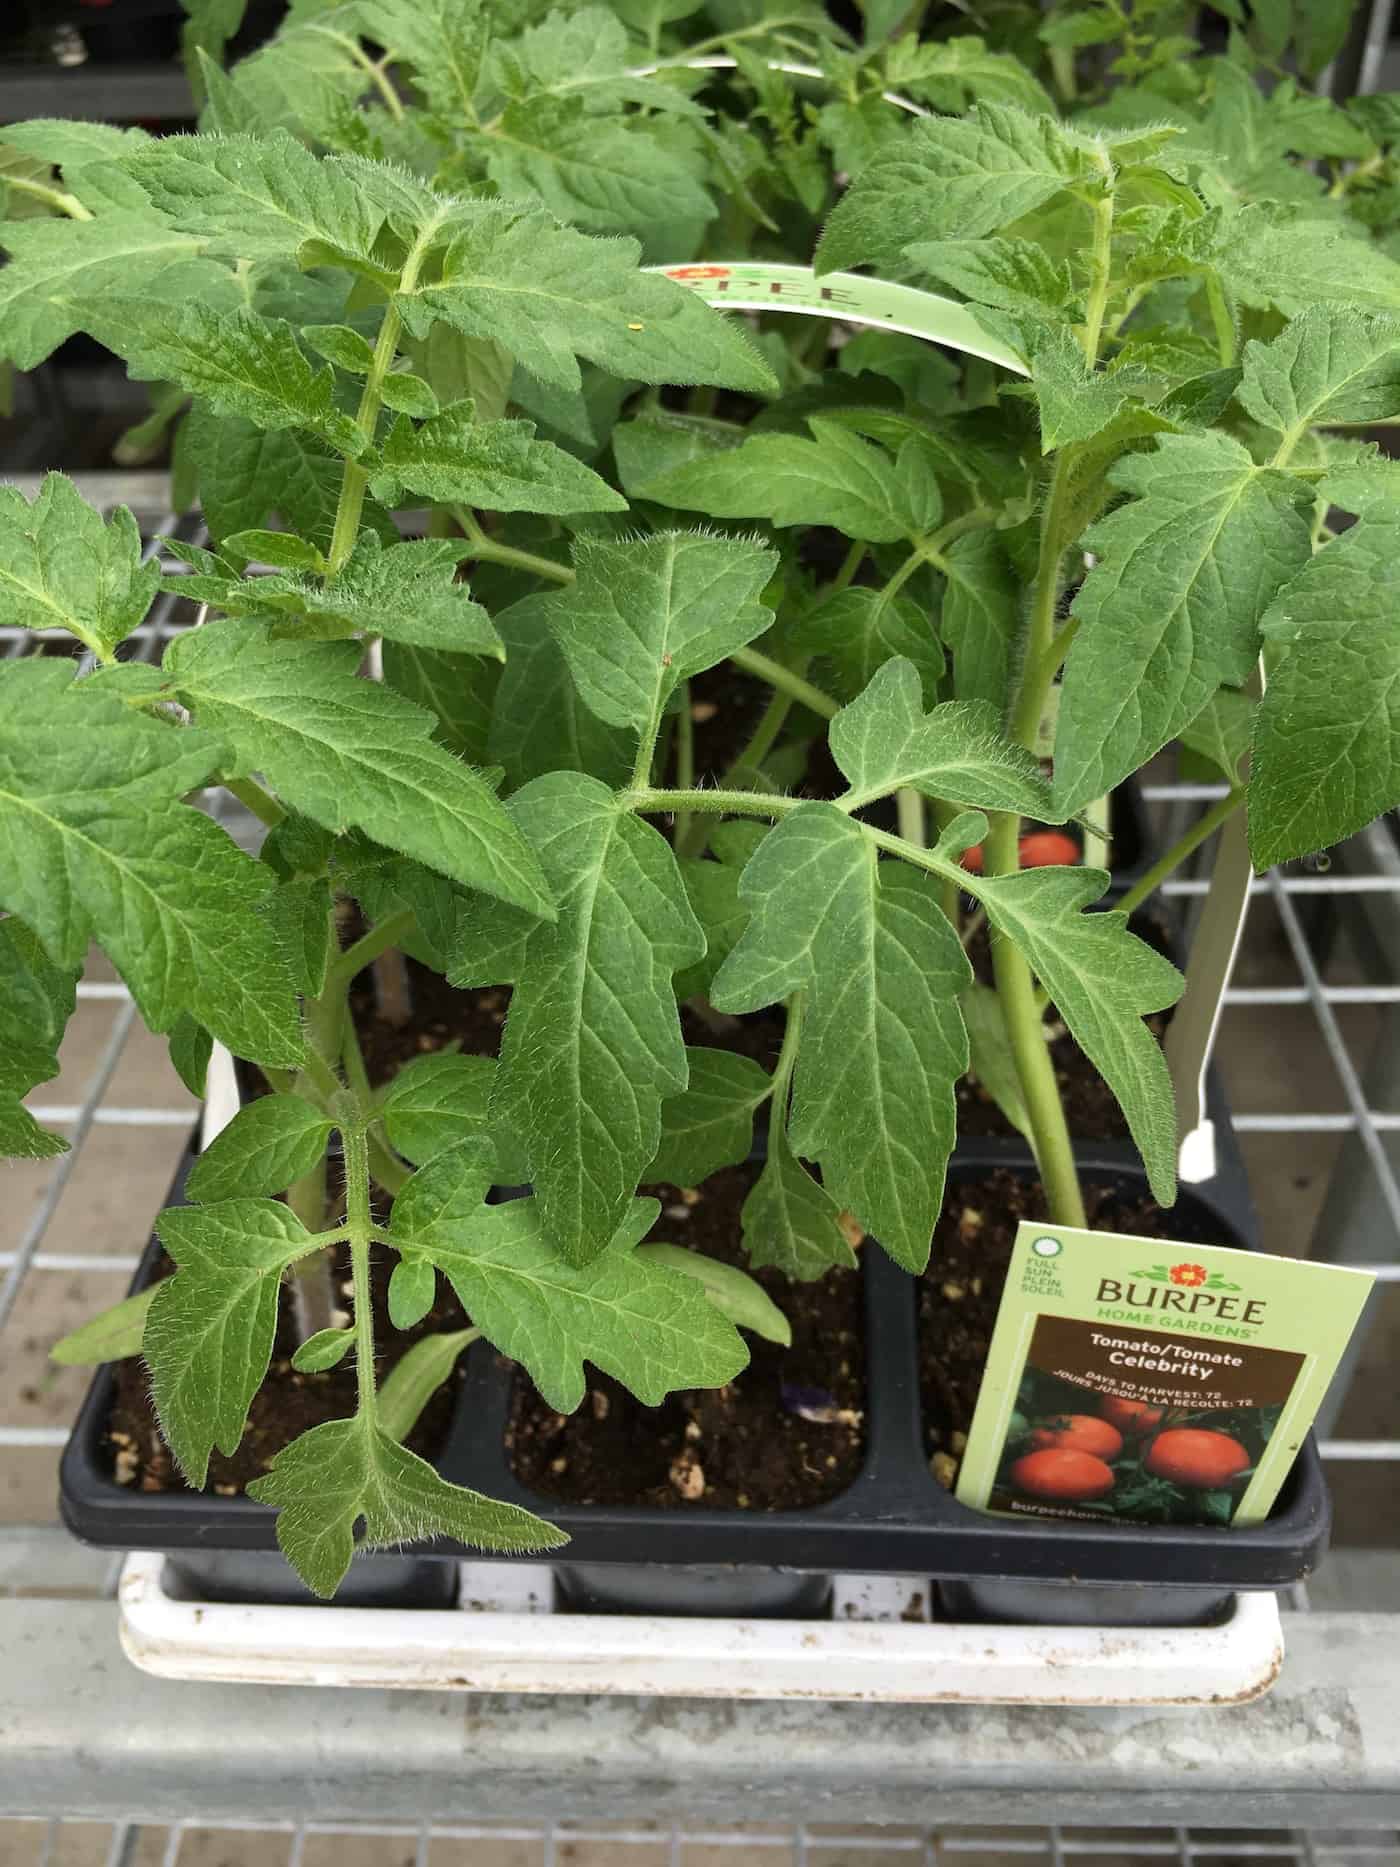 Celebrity tomato plants